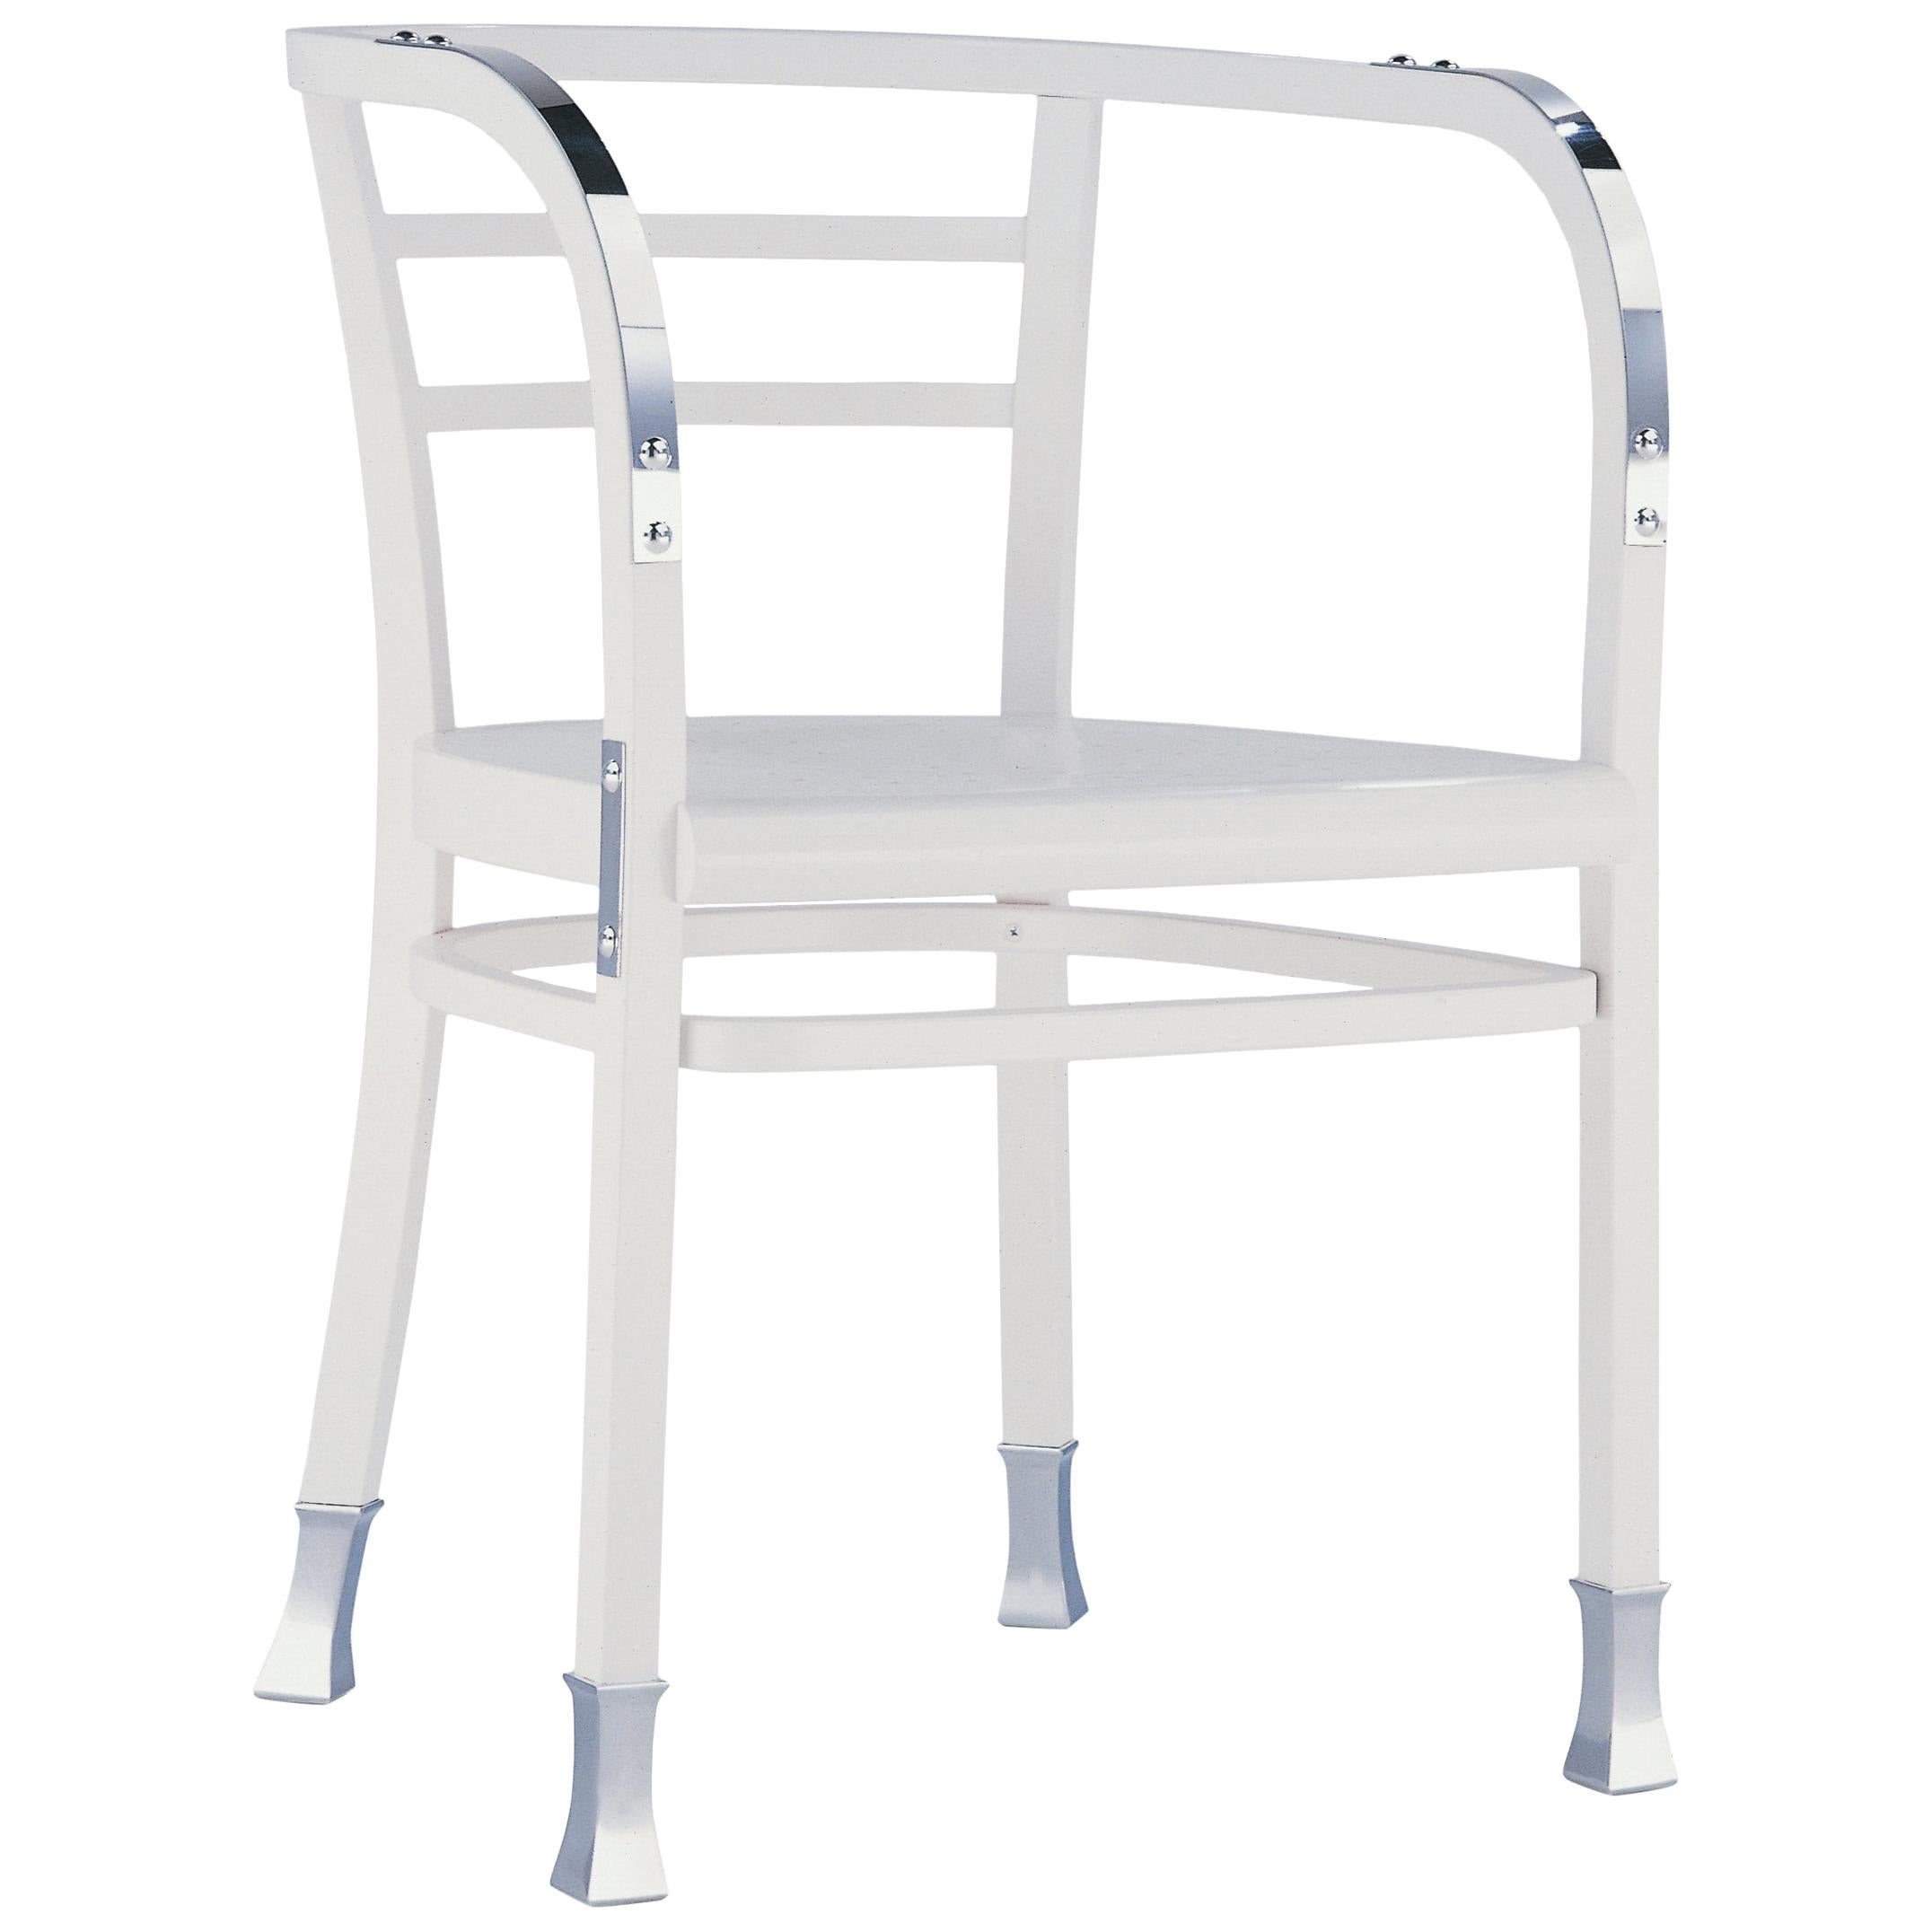 Gebrüder Thonet Vienna GmbH Postsparkasse Chair in White and Aluminium For Sale